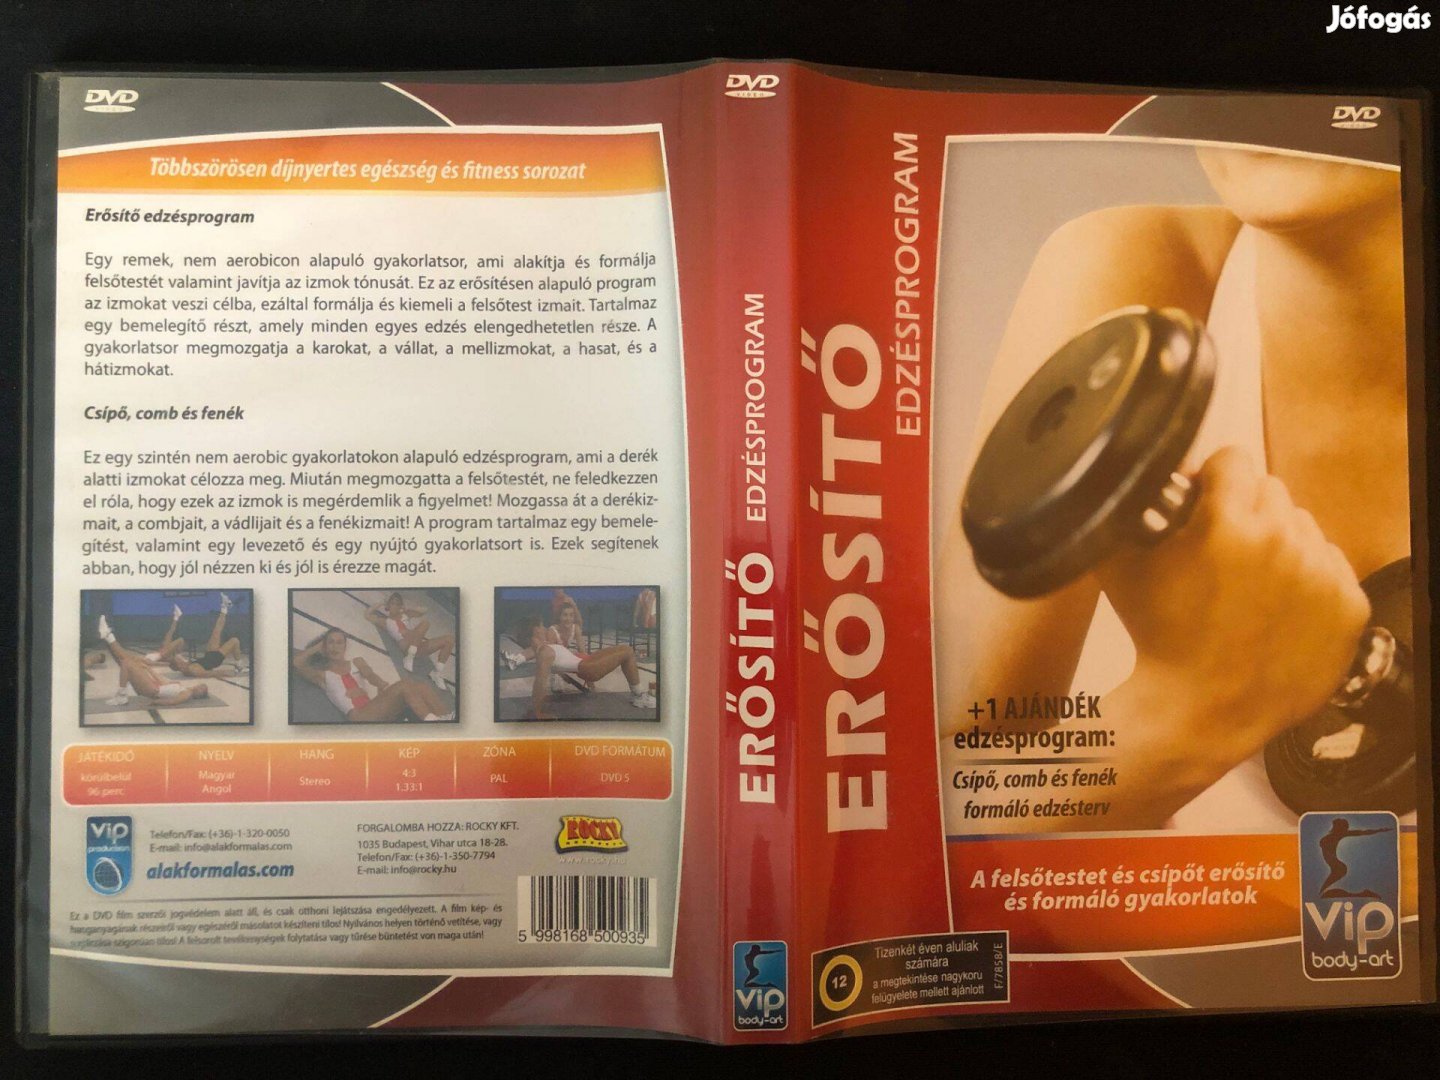 Erősítő edzésprogram (karcmentes) DVD